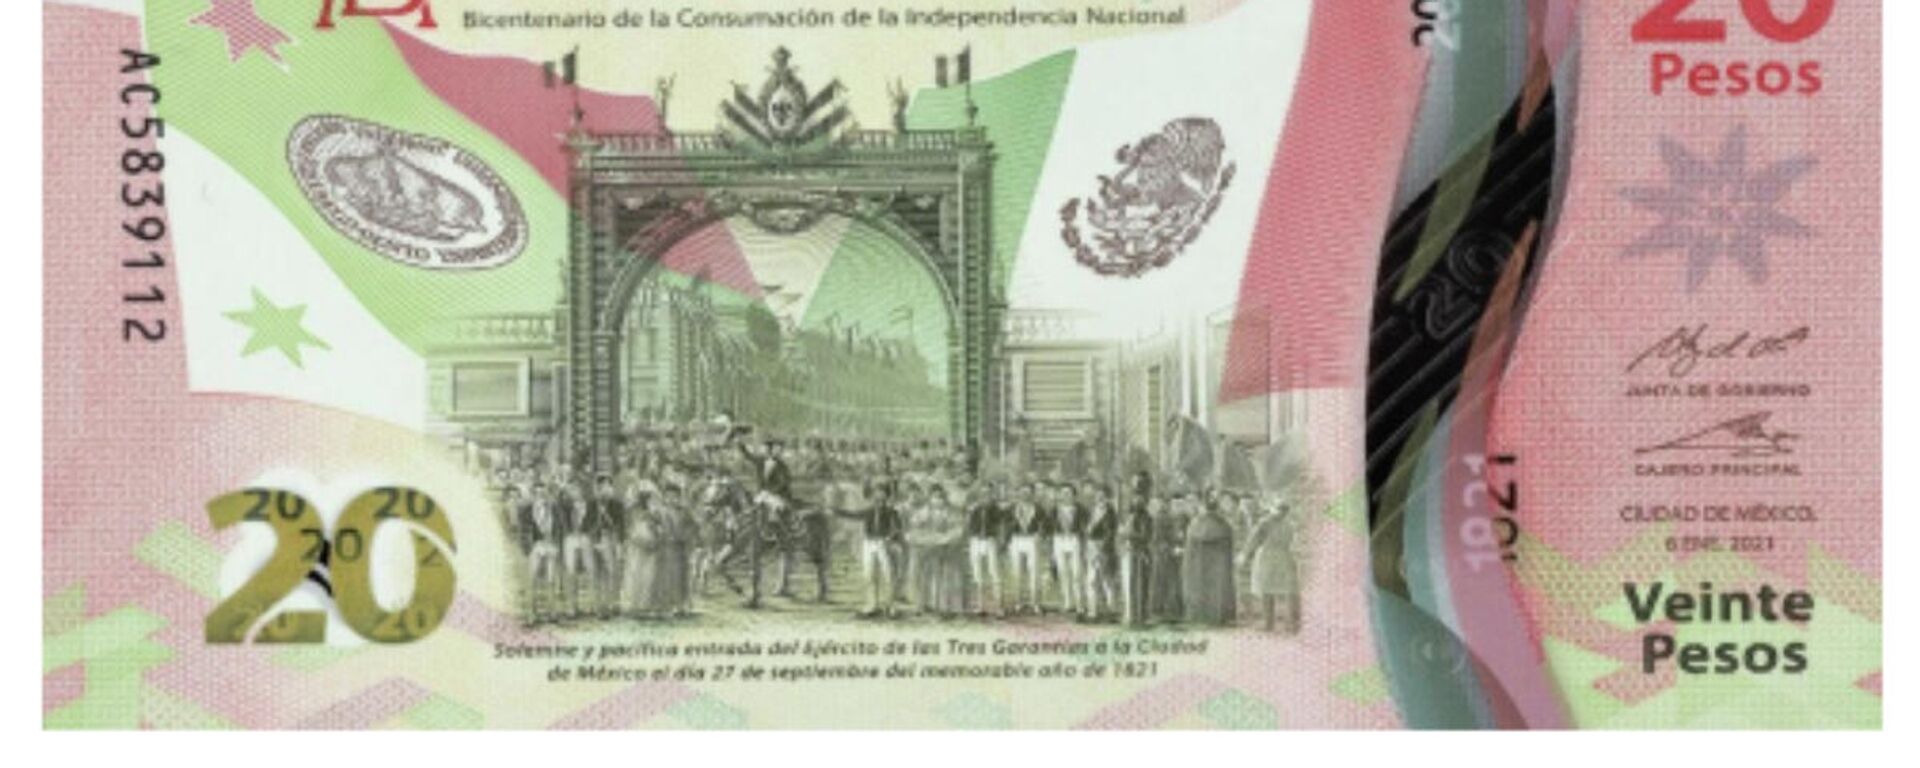 Nuevo billete de 20 pesos en México - Sputnik Mundo, 1920, 24.12.2021